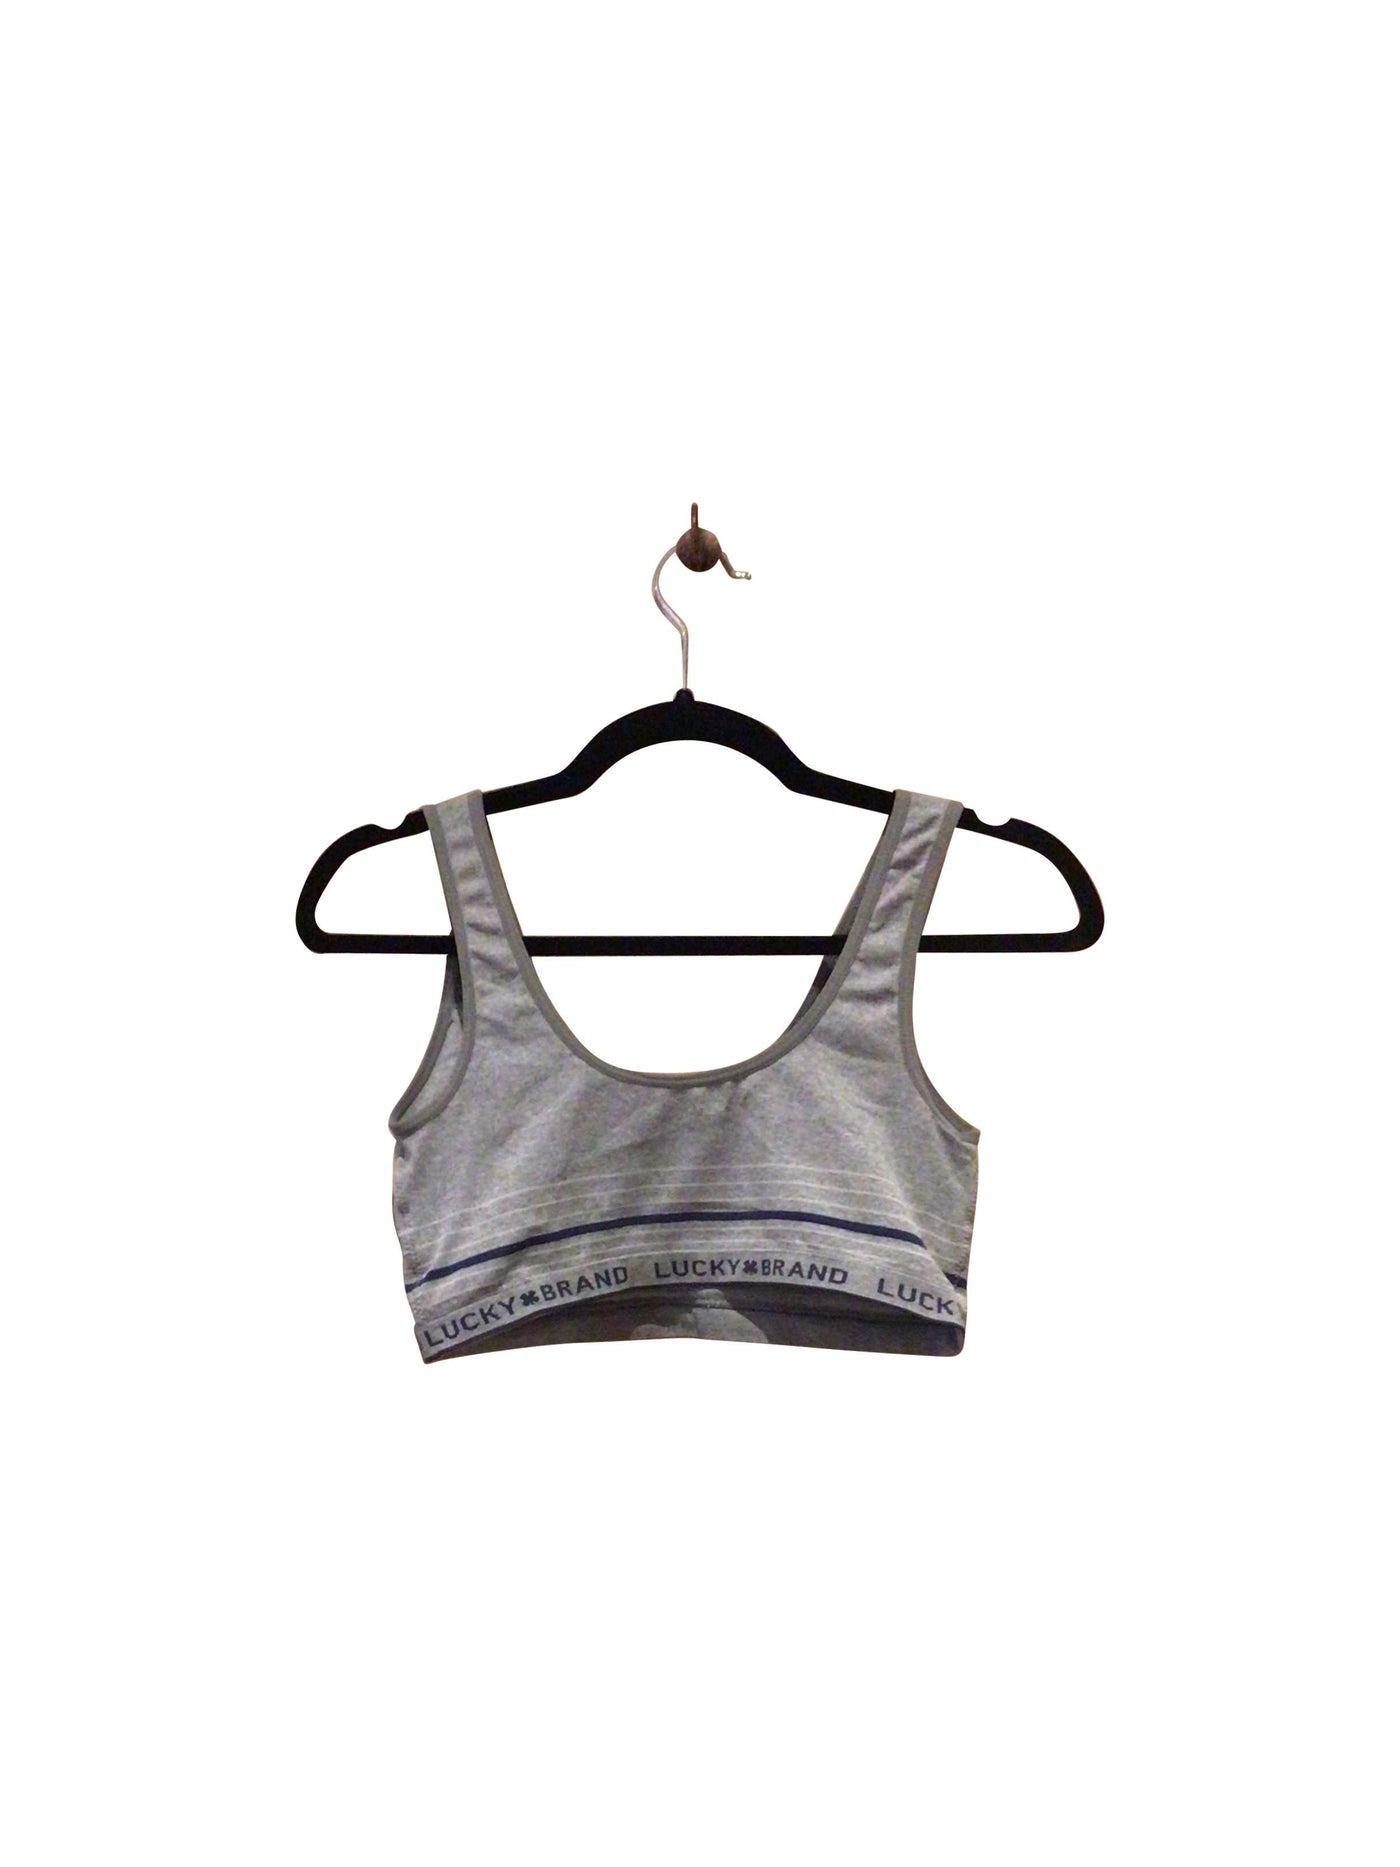 LUCKY BRAND Activewear Sport bra in Gray  -  S  16.19 Koop